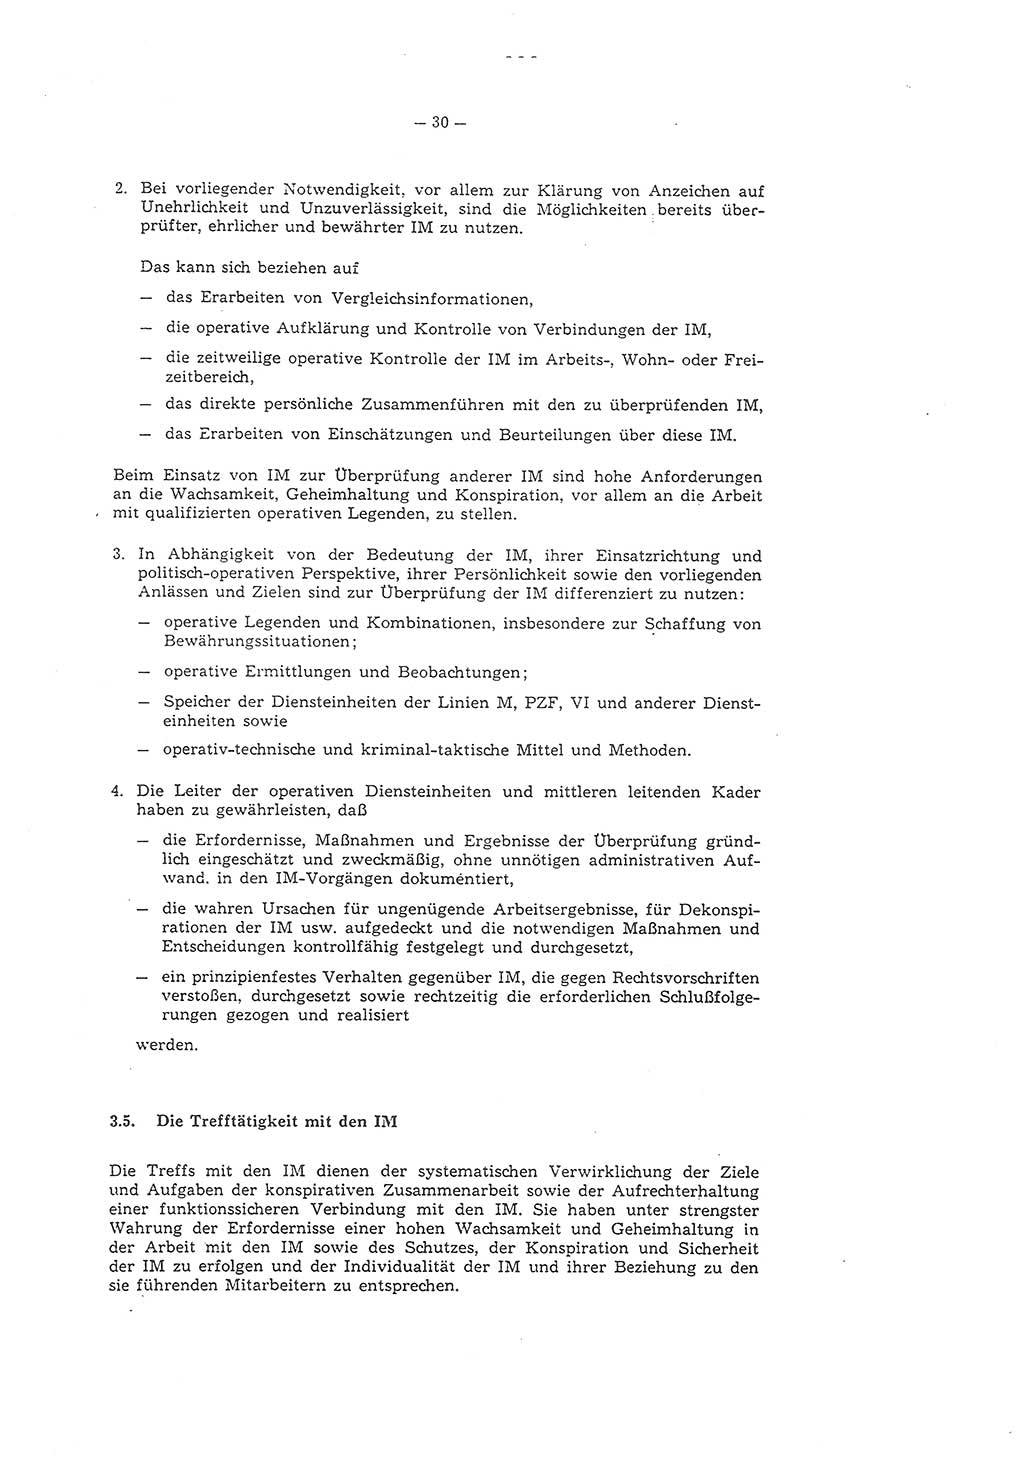 Richtlinie 1/79 für die Arbeit mit Inoffiziellen Mitarbeitern (IM) und Gesellschaftlichen Mitarbeitern für Sicherheit (GMS), Deutsche Demokratische Republik (DDR), Ministerium für Staatssicherheit (MfS), Der Minister (Mielke), Geheime Verschlußsache (GVS) ooo8-1/79, Berlin 1979, Seite 30 (RL 1/79 DDR MfS Min. GVS ooo8-1/79 1979, S. 30)